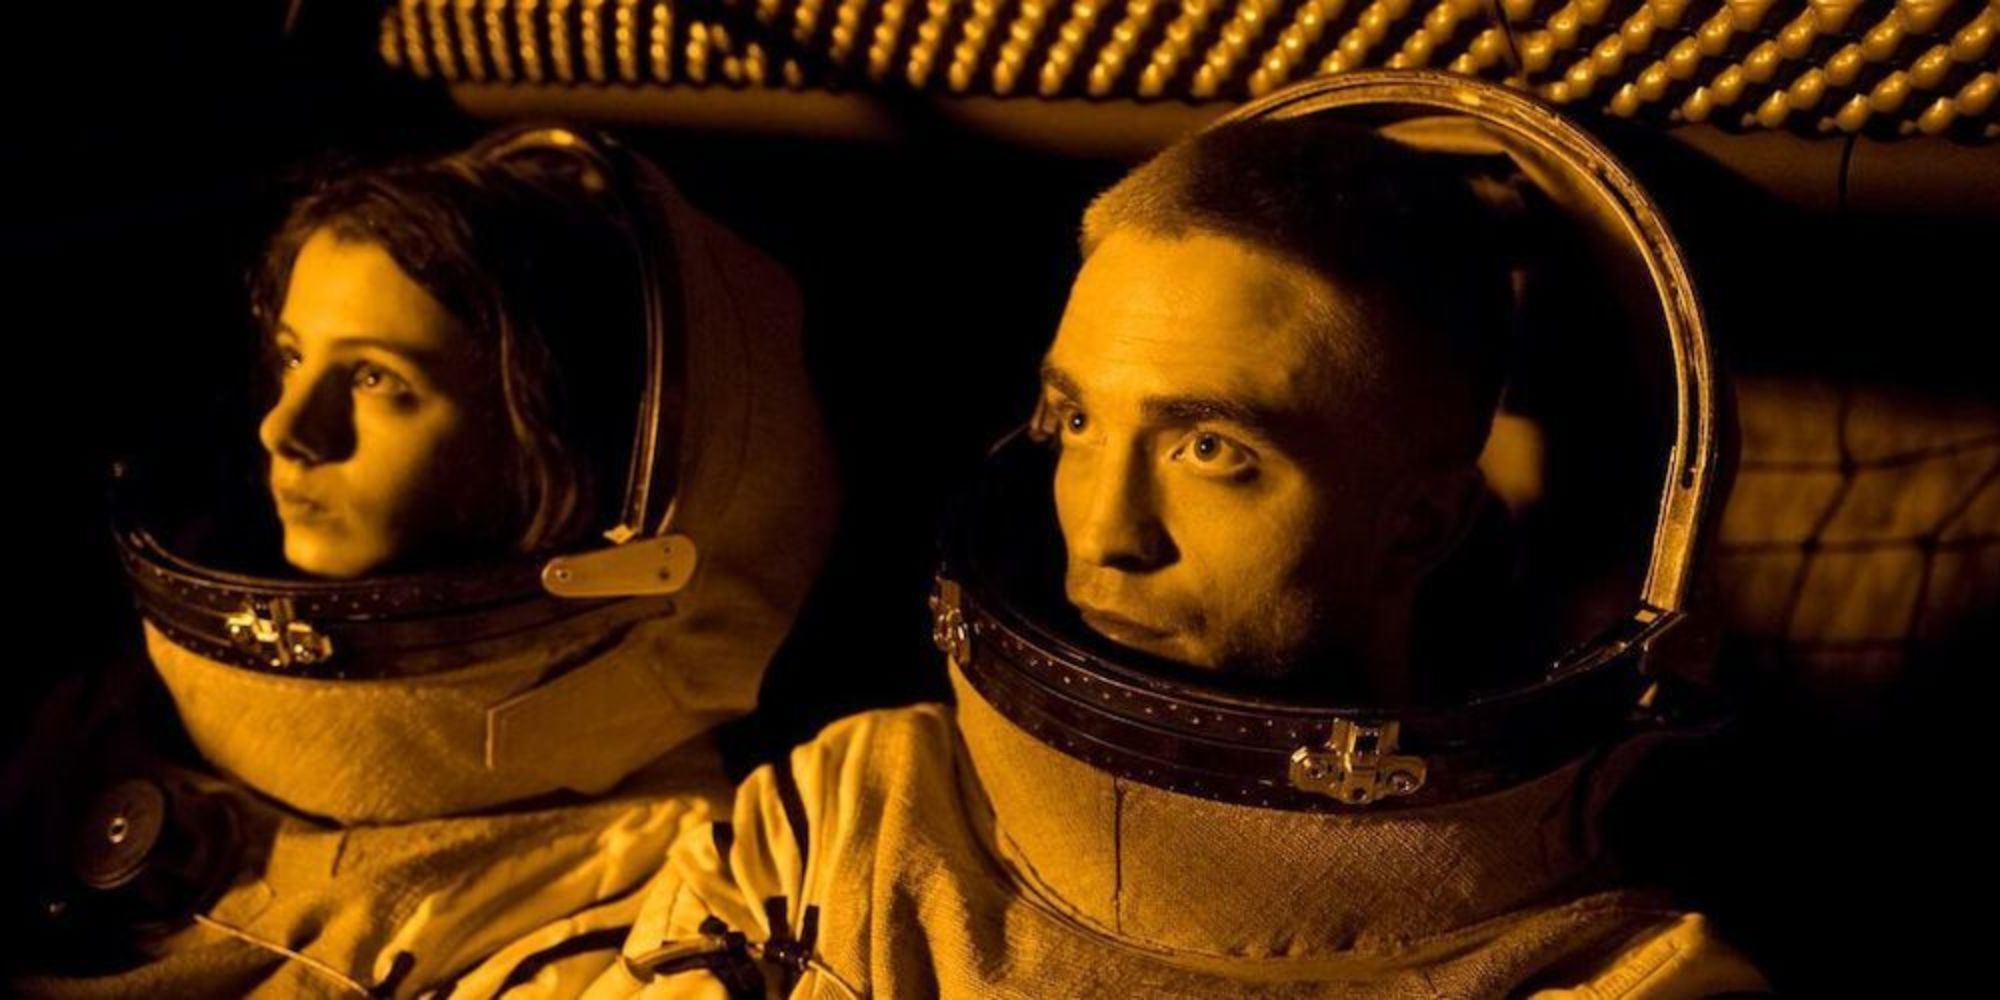 Deux astronautes, un homme et une femme, regardent par le hublot en direction du soleil à bord de leur vaisseau spatial.